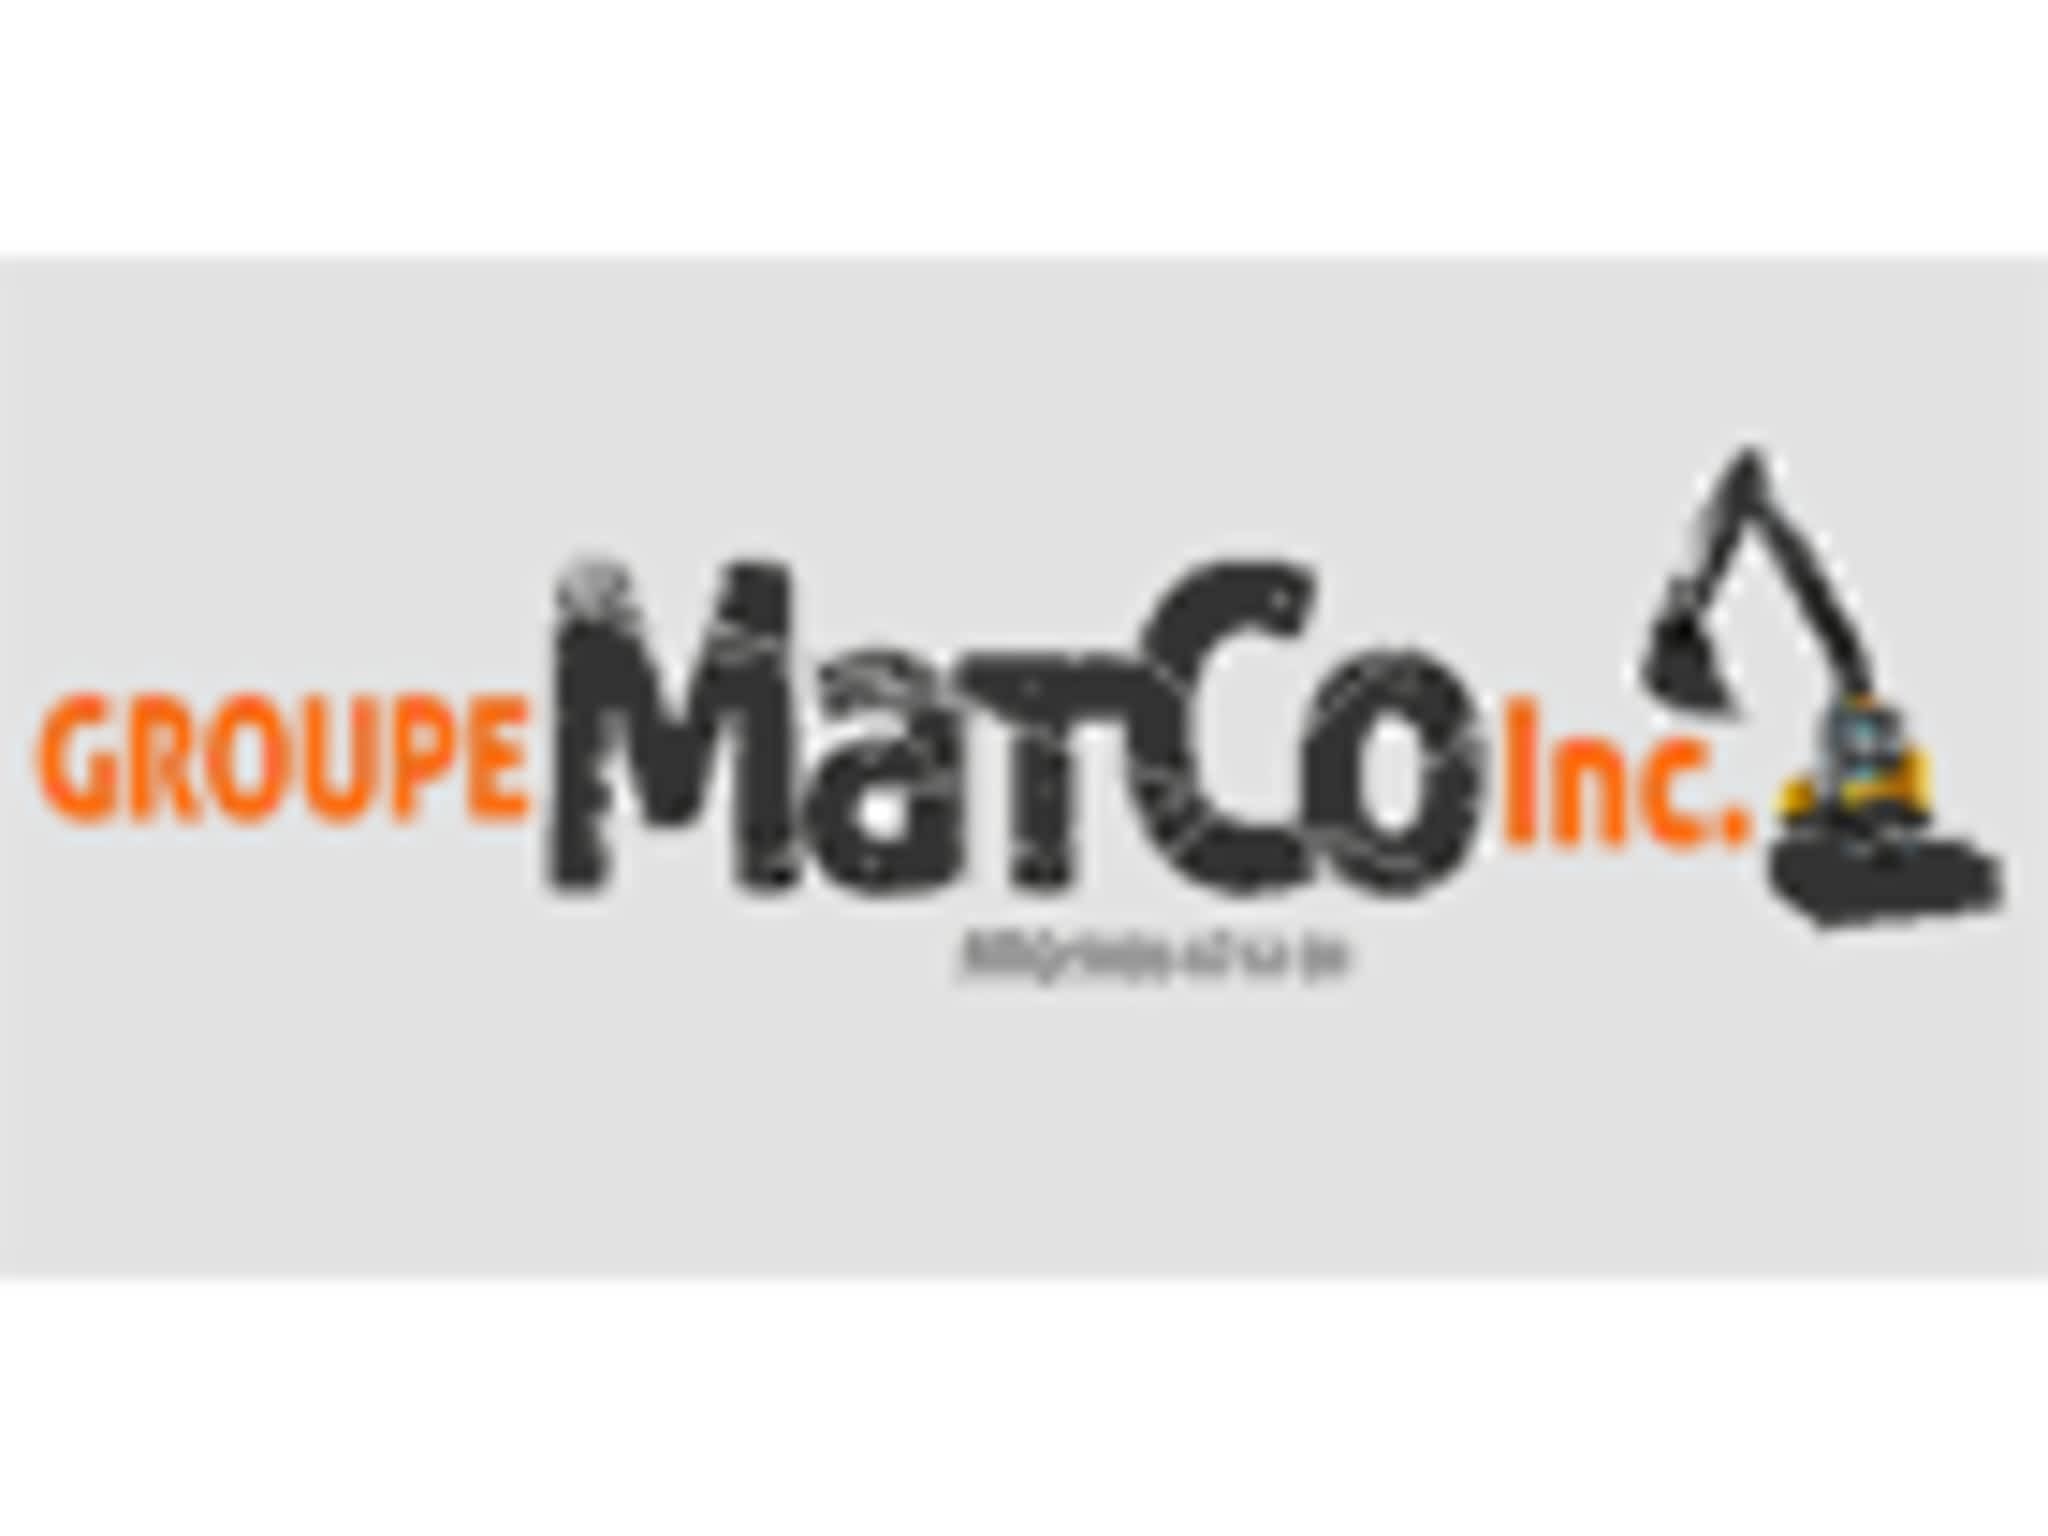 photo Groupe MatCo Inc